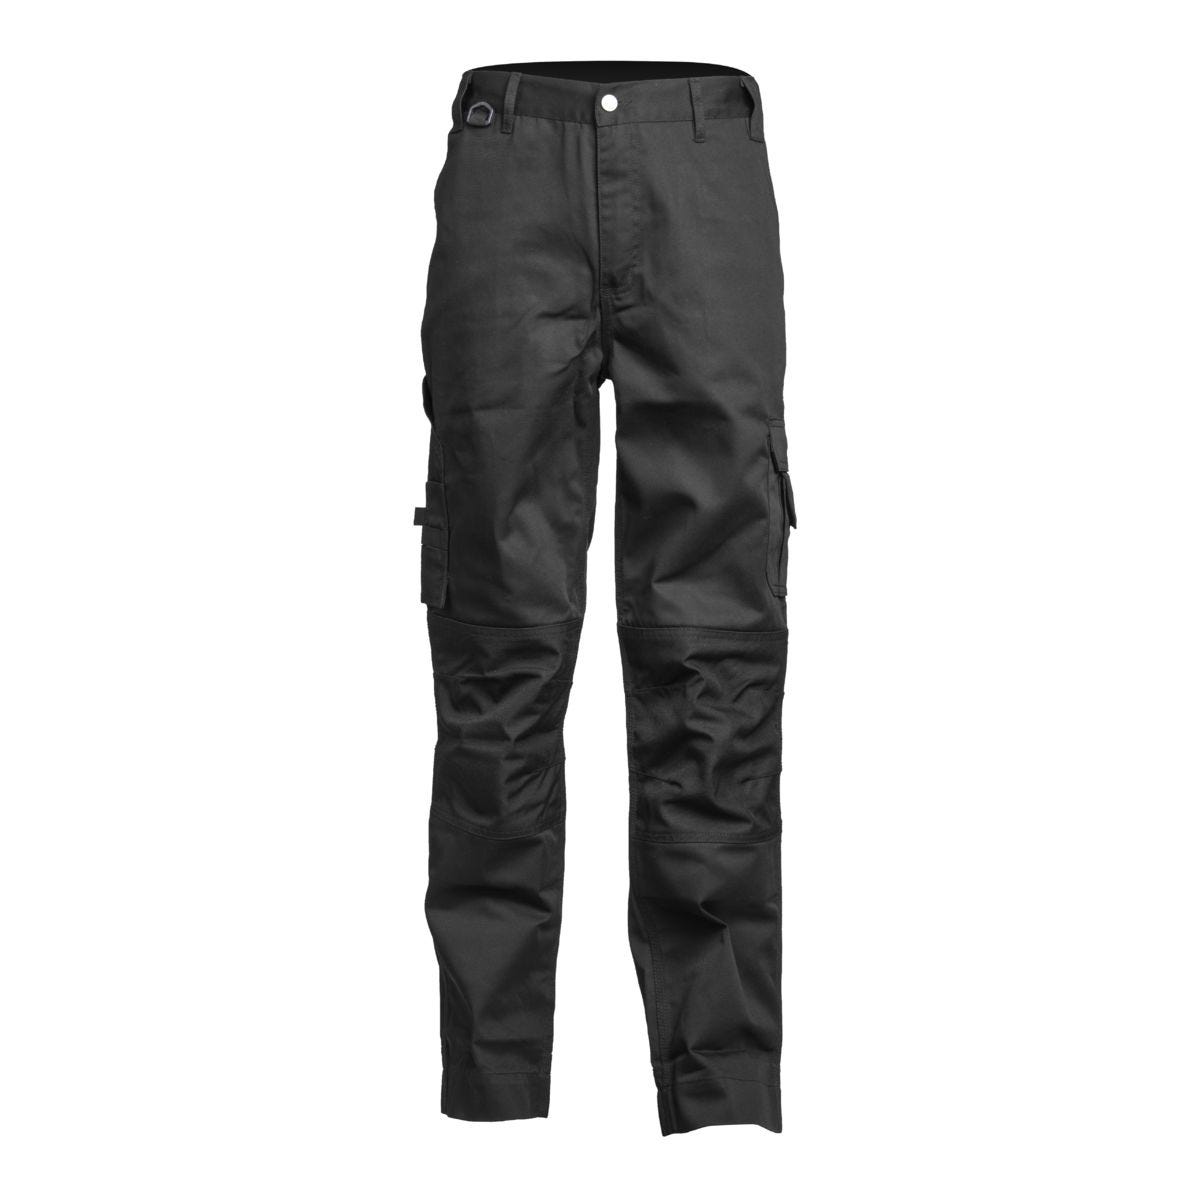 Pantalon CLASS noir - COVERGUARD - Taille L 0